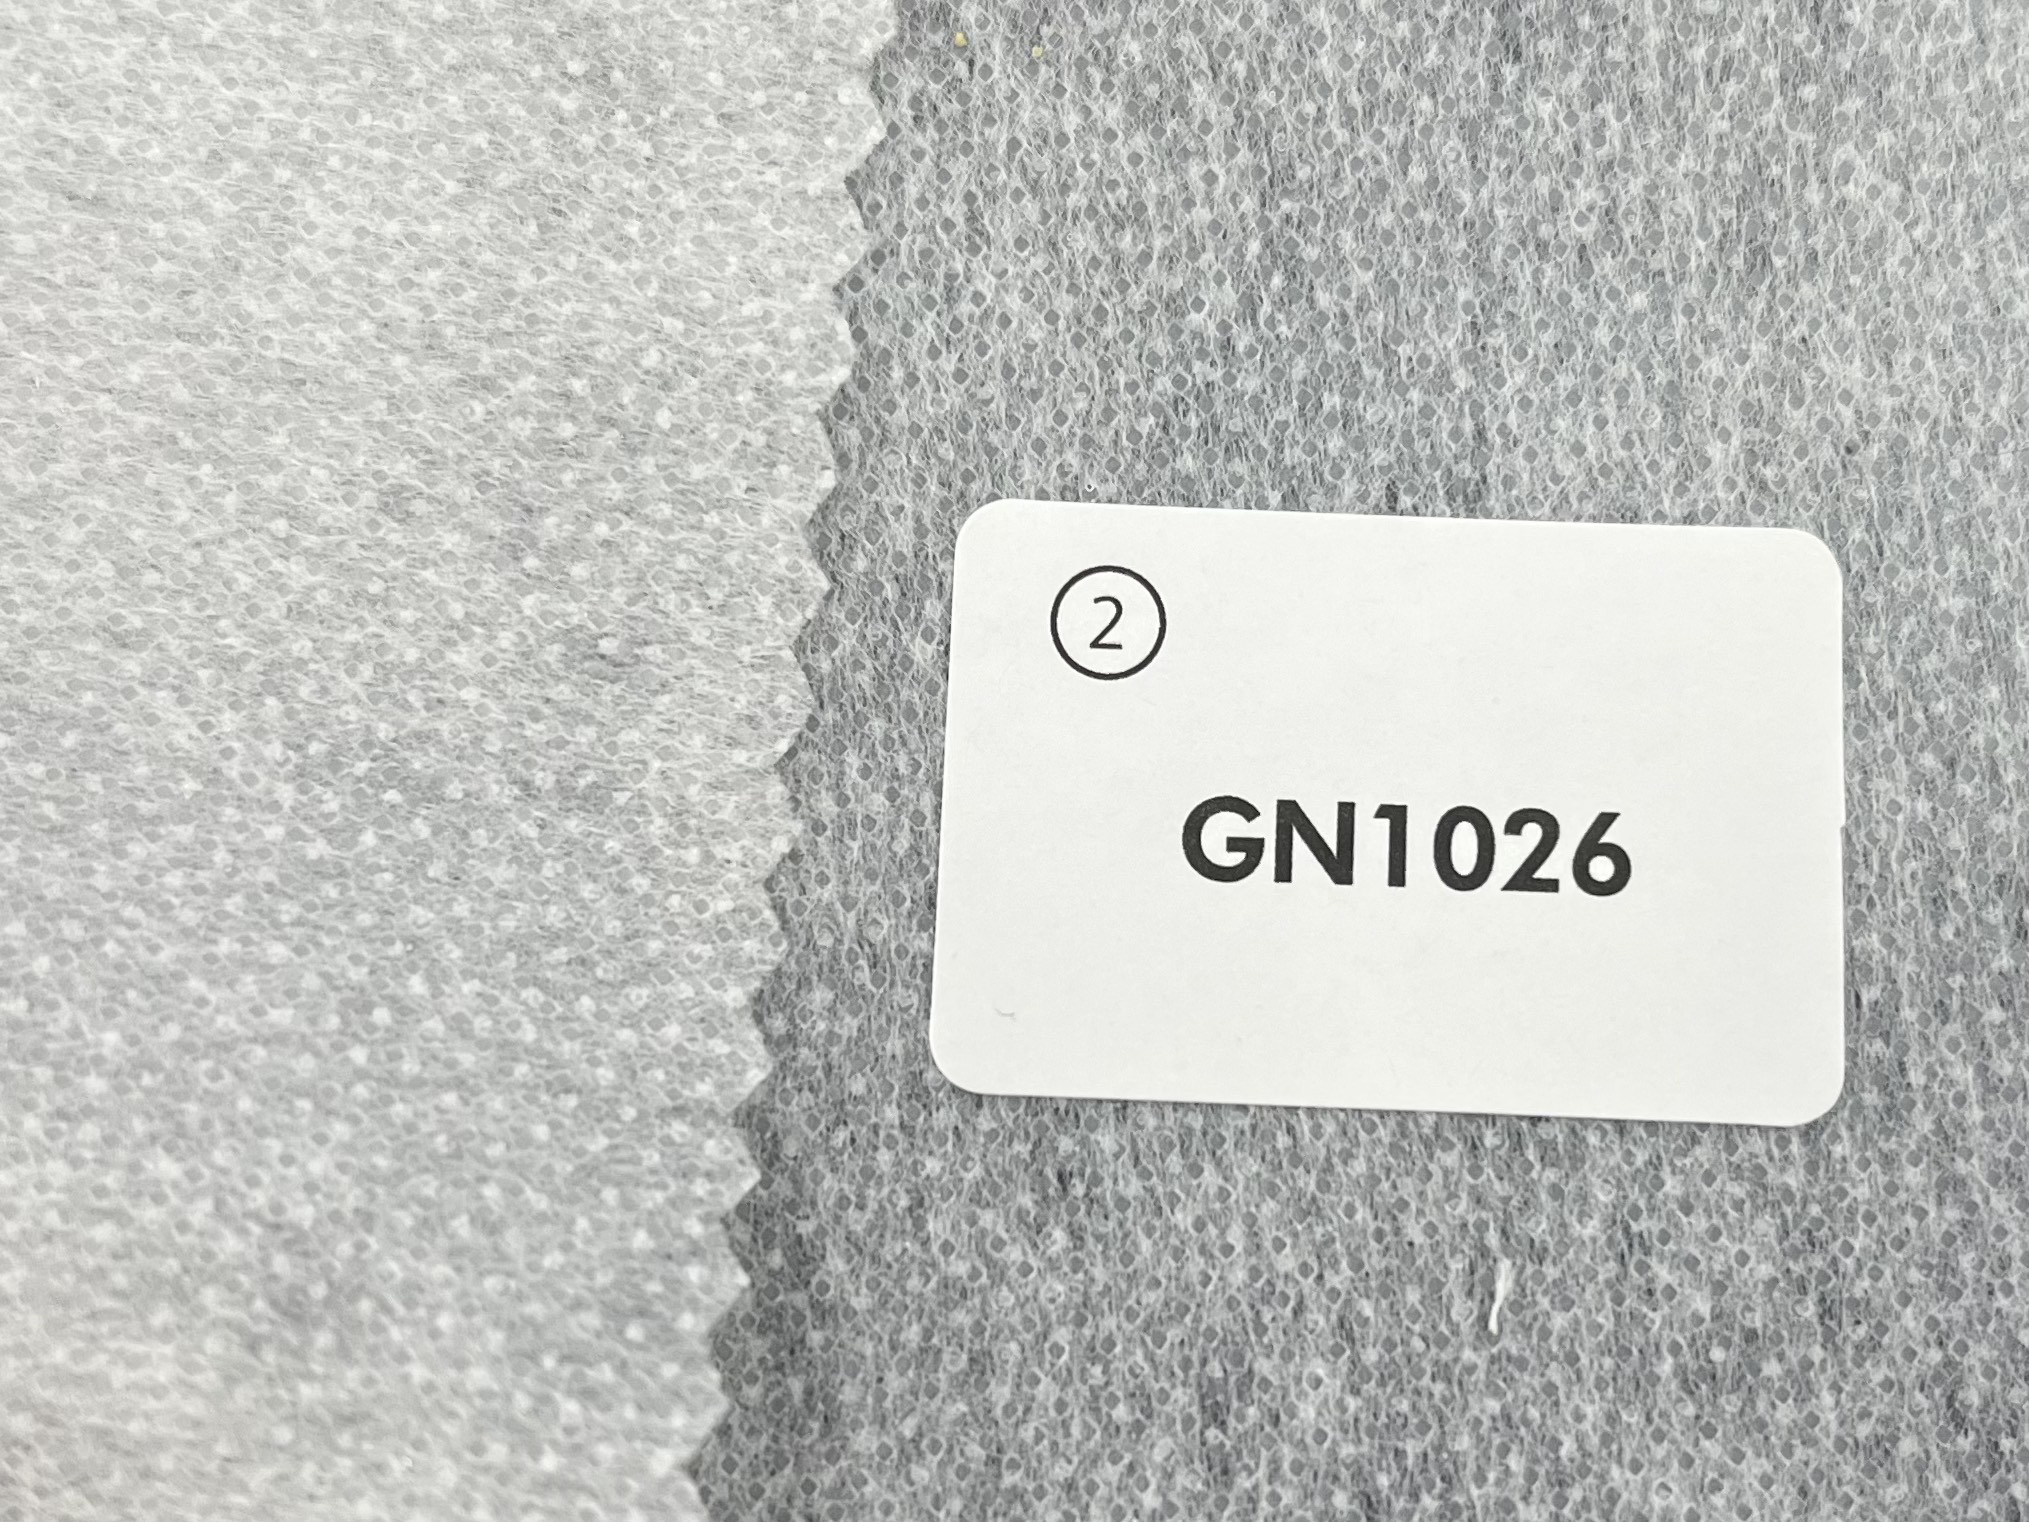 GN1026